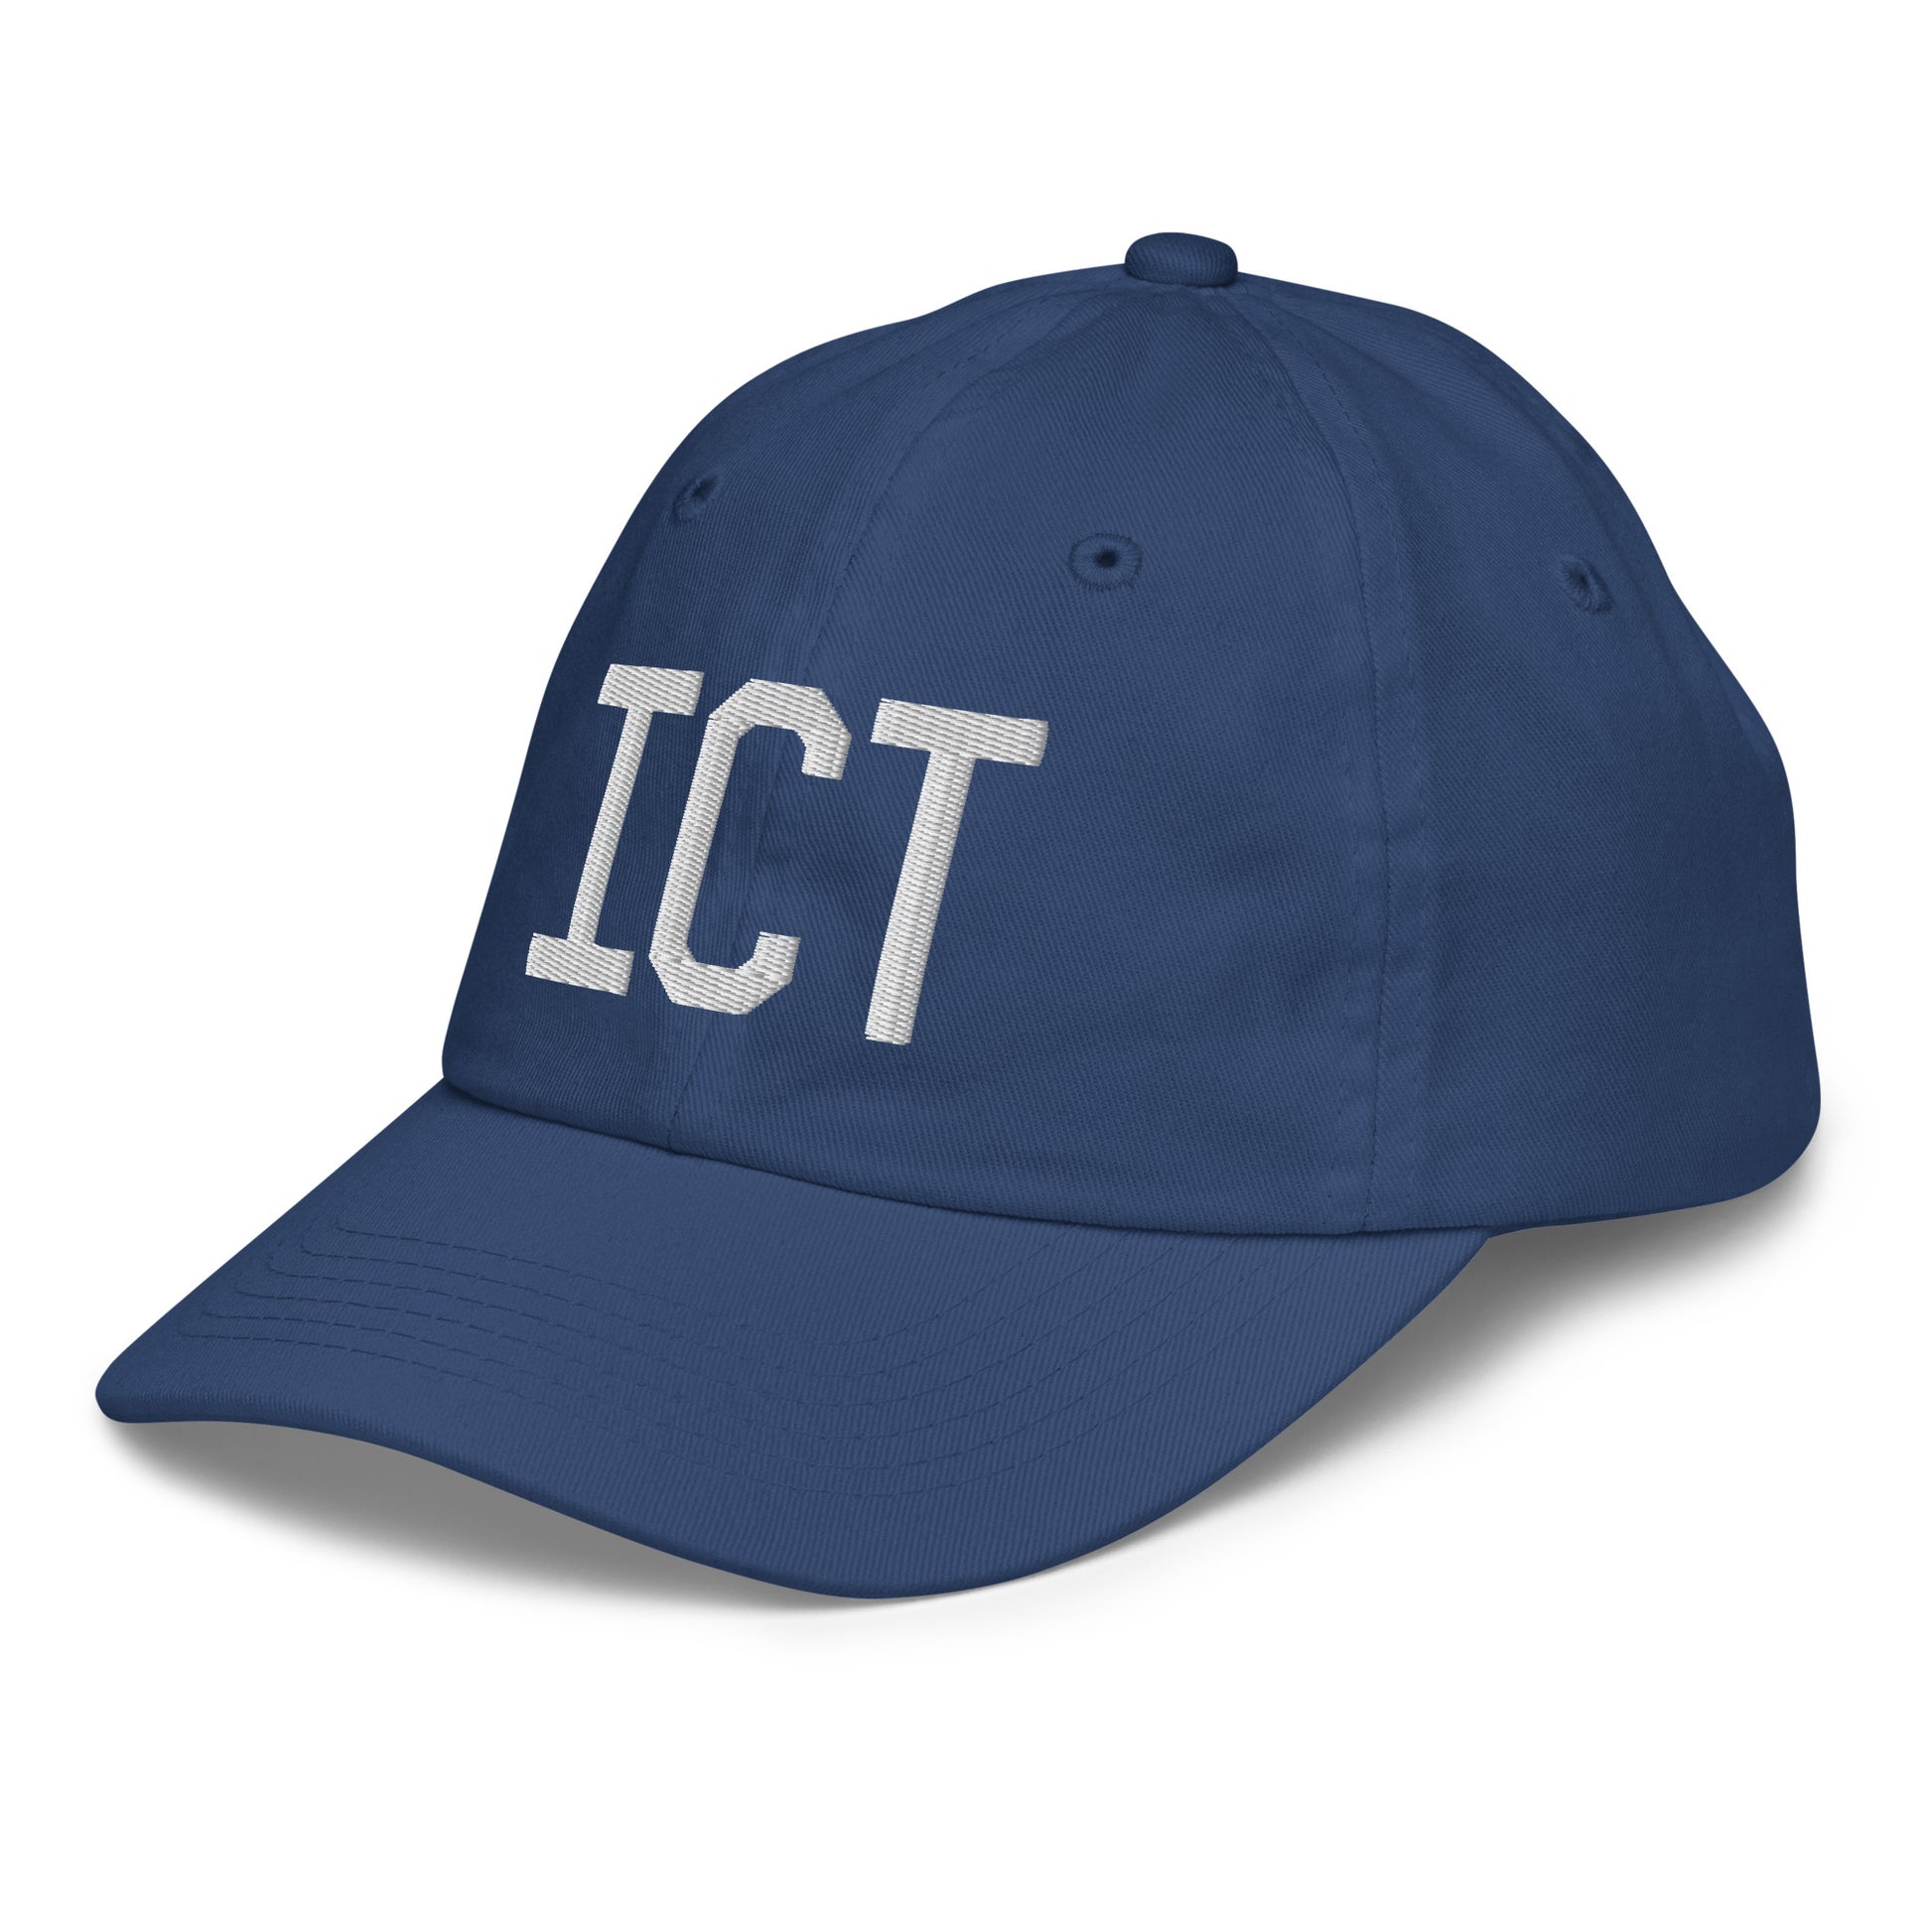 Airport Code Kid's Baseball Cap - White • ICT Wichita • YHM Designs - Image 01